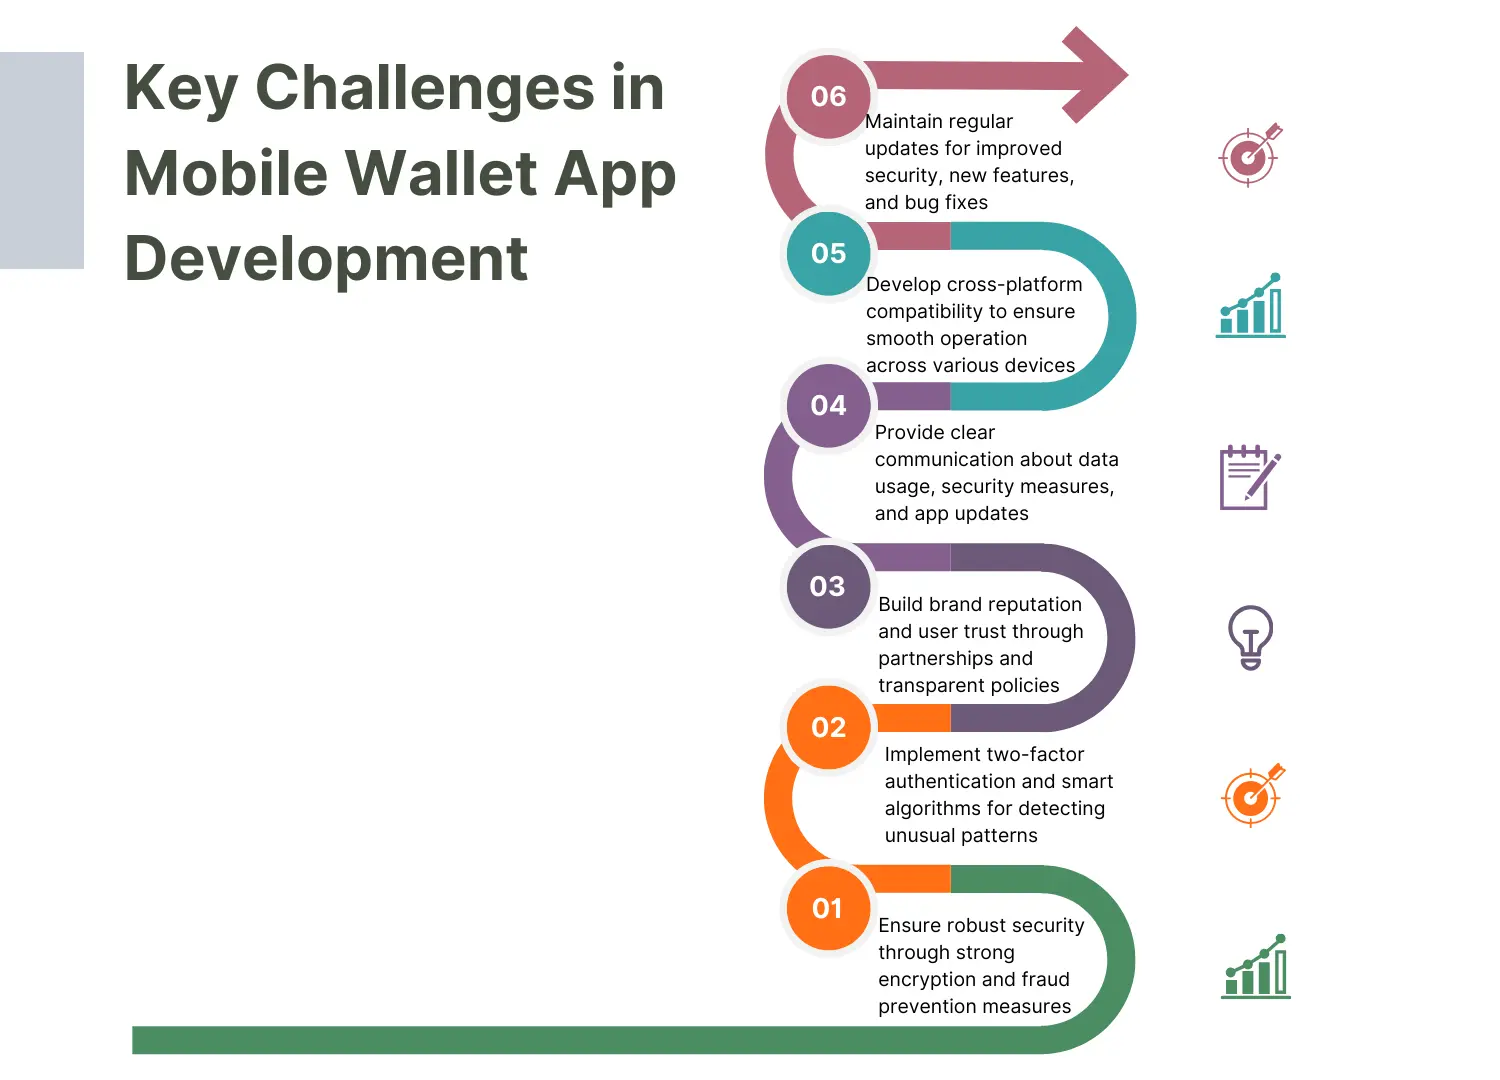 Challenges in Mobile Wallet App Development